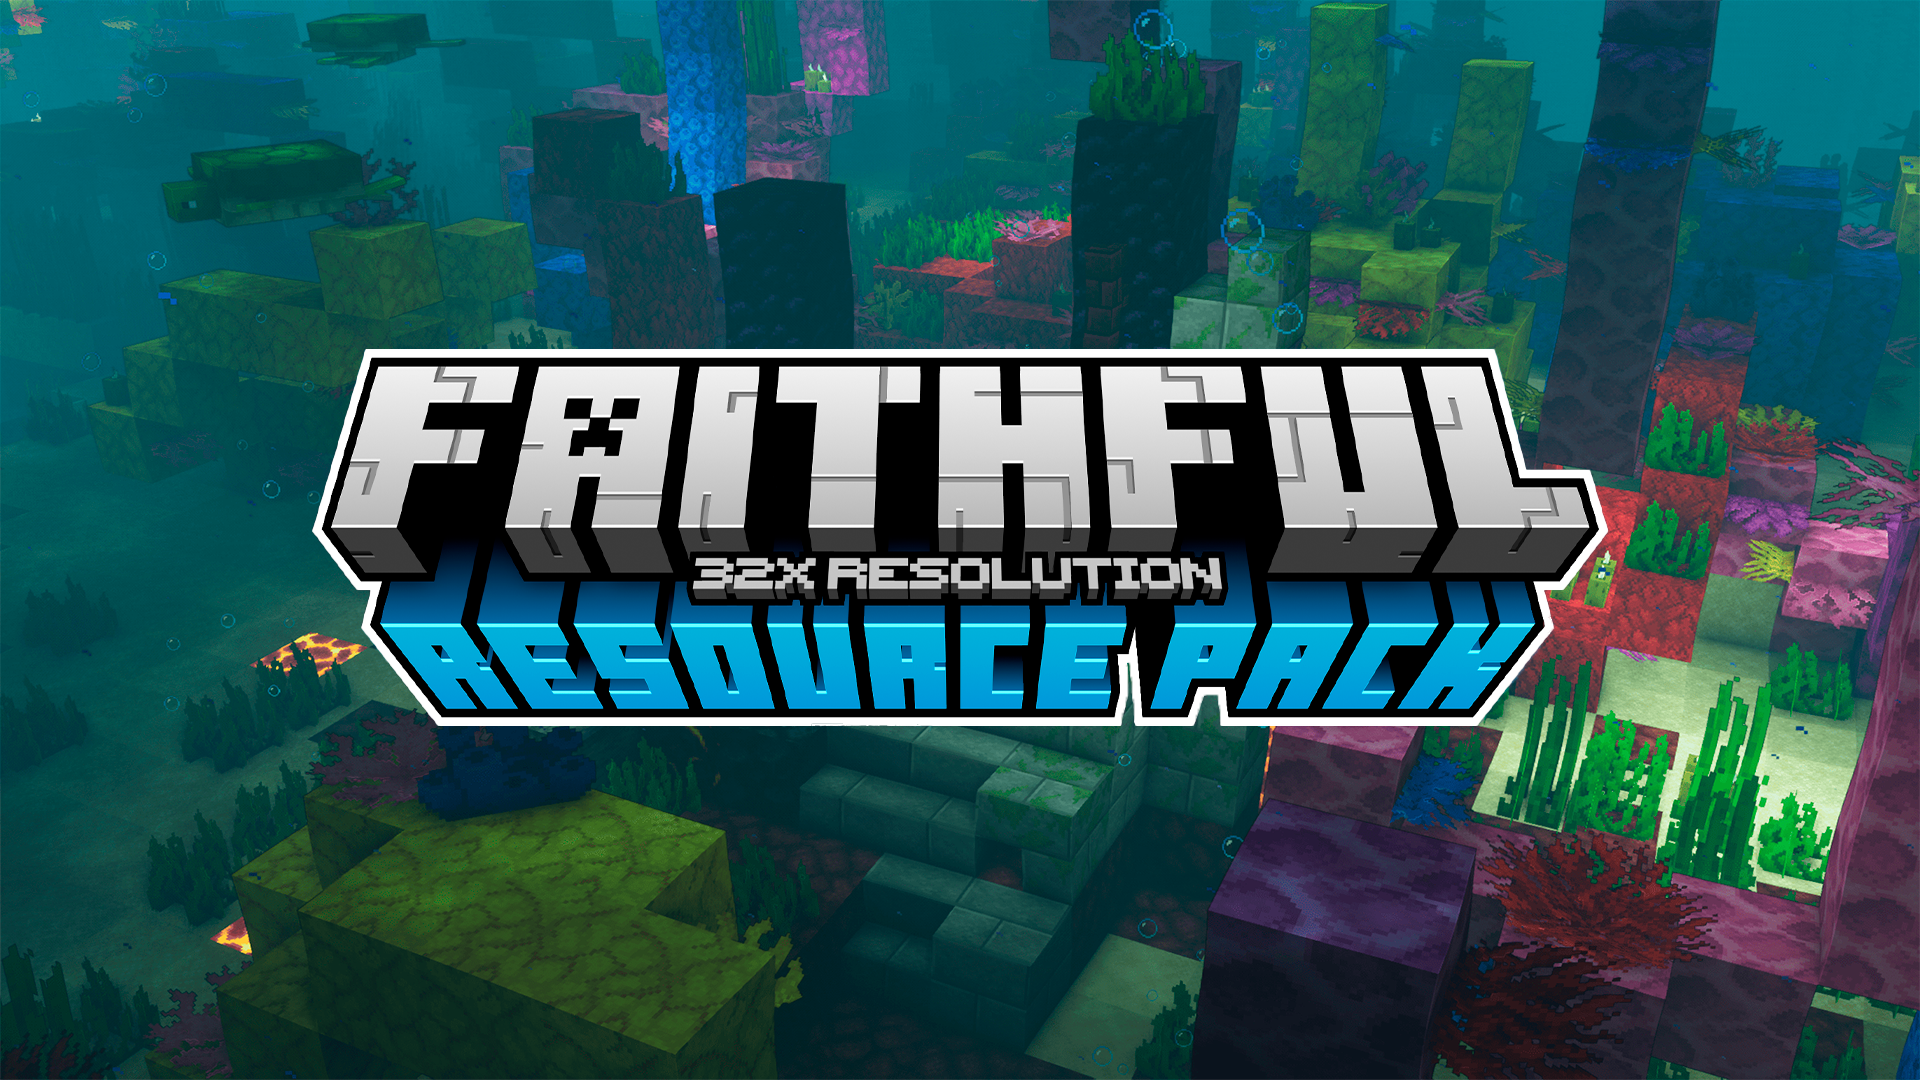 Faithful 1.19 Bedrock 64x - Pacotes de textura para Minecraft - Micdoodle8